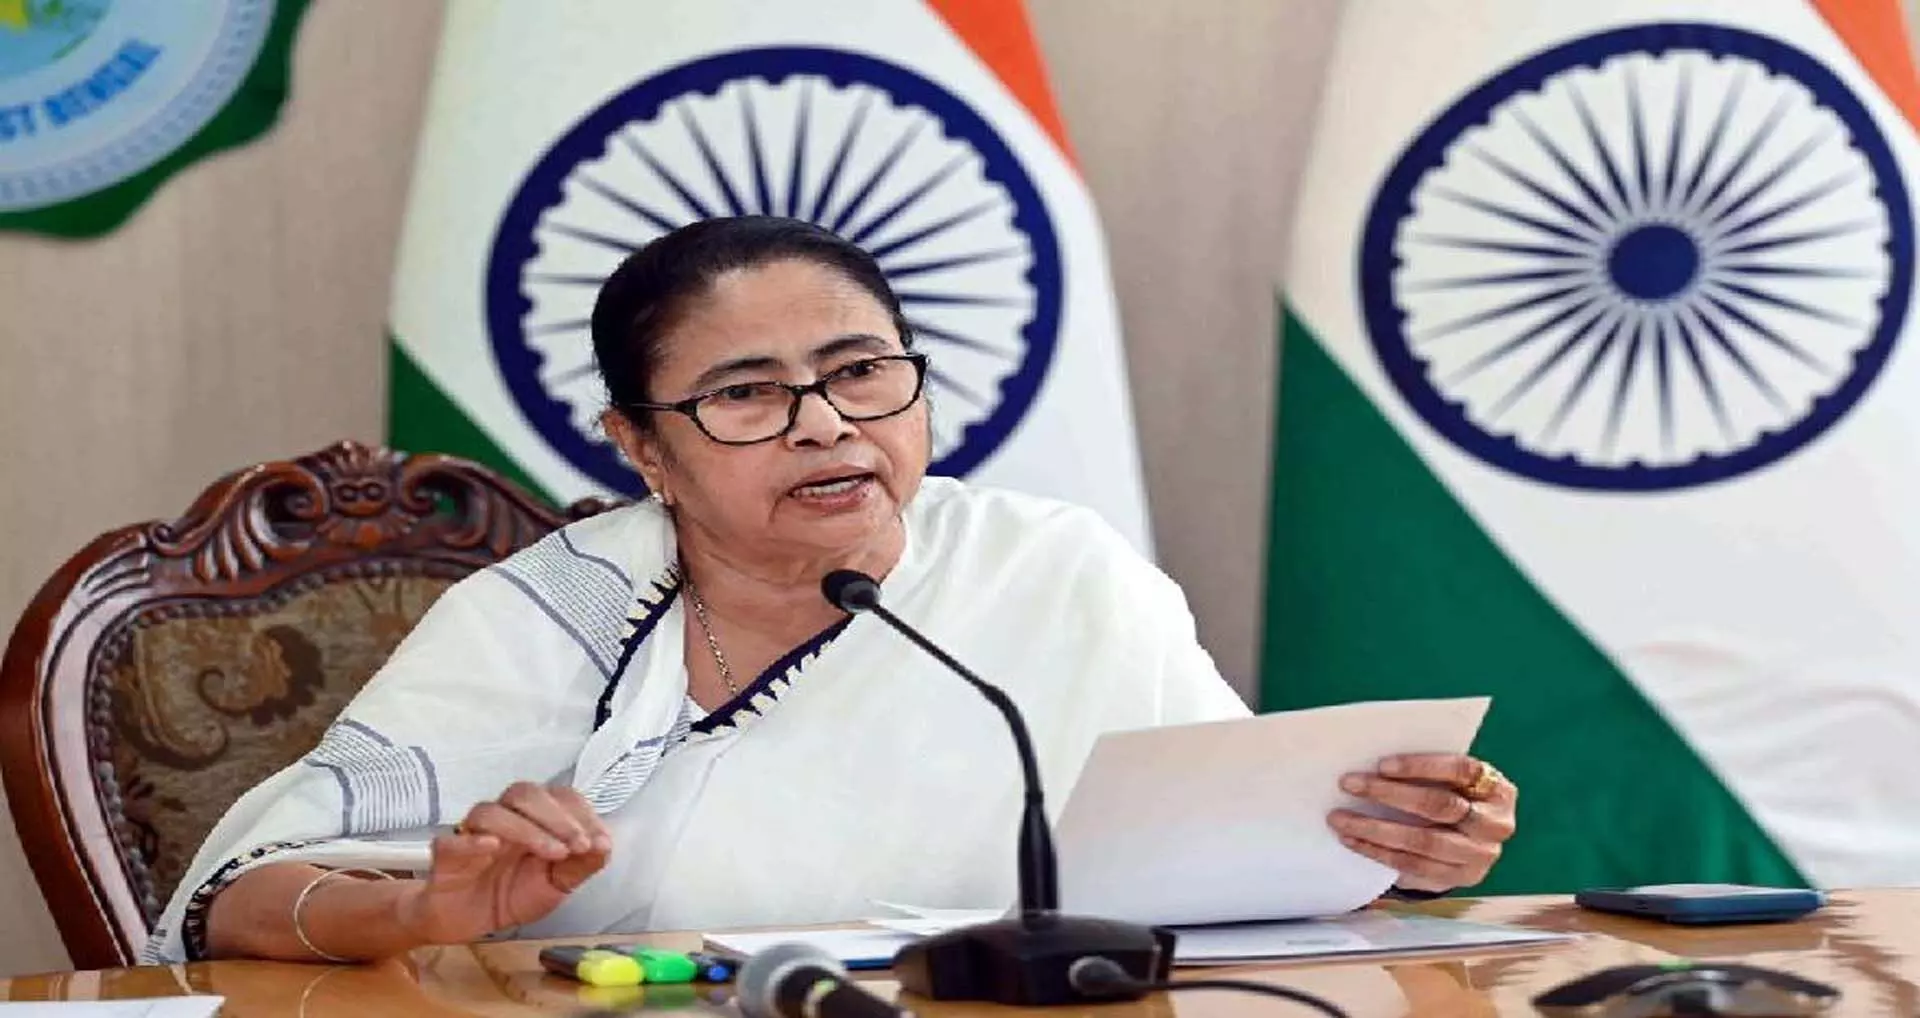 मुख्यमंत्री ममता बनर्जी ने कृषि आंदोलन पर ध्यान केंद्रित करने के लिए पंजाब यात्रा टाल दी